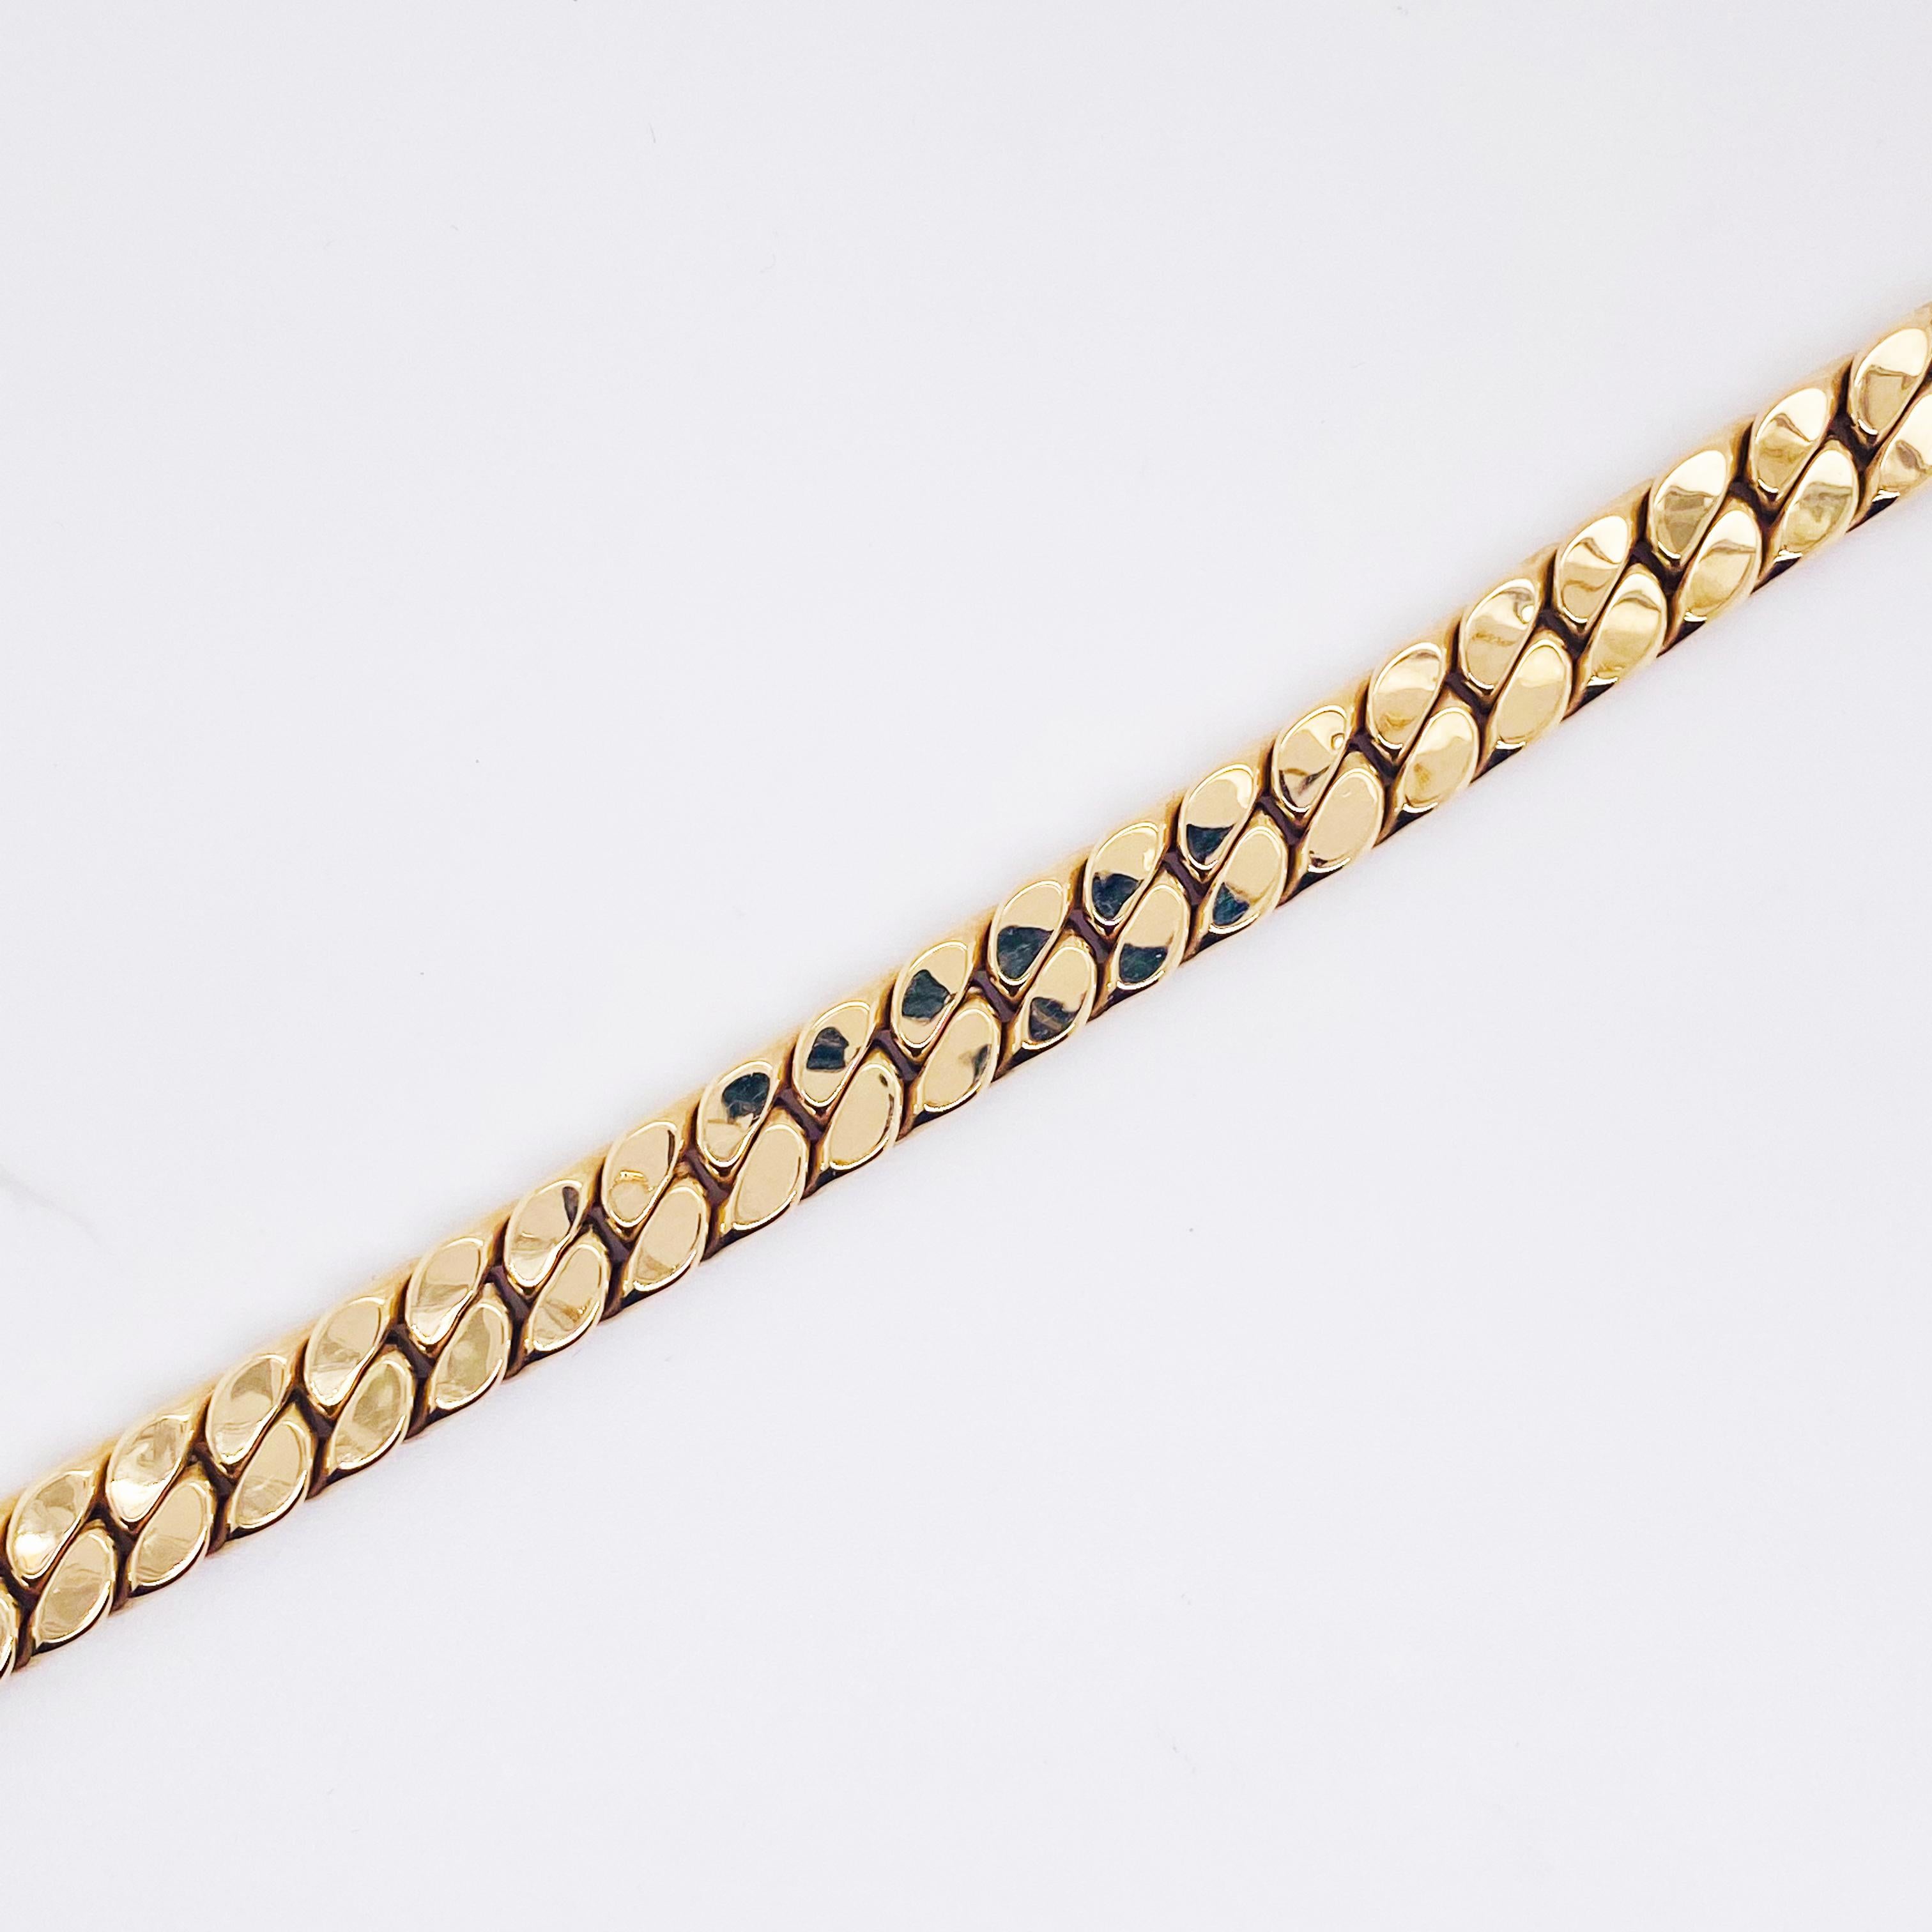 Ce bracelet en or de 8 pouces convient parfaitement au poignet d'une grande femme ou d'un homme. Il est conçu et fabriqué en or jaune 14 carats. Cela signifie qu'il n'est PAS plaqué et qu'il a un aspect très lourd puisqu'il fait 7 millimètres de